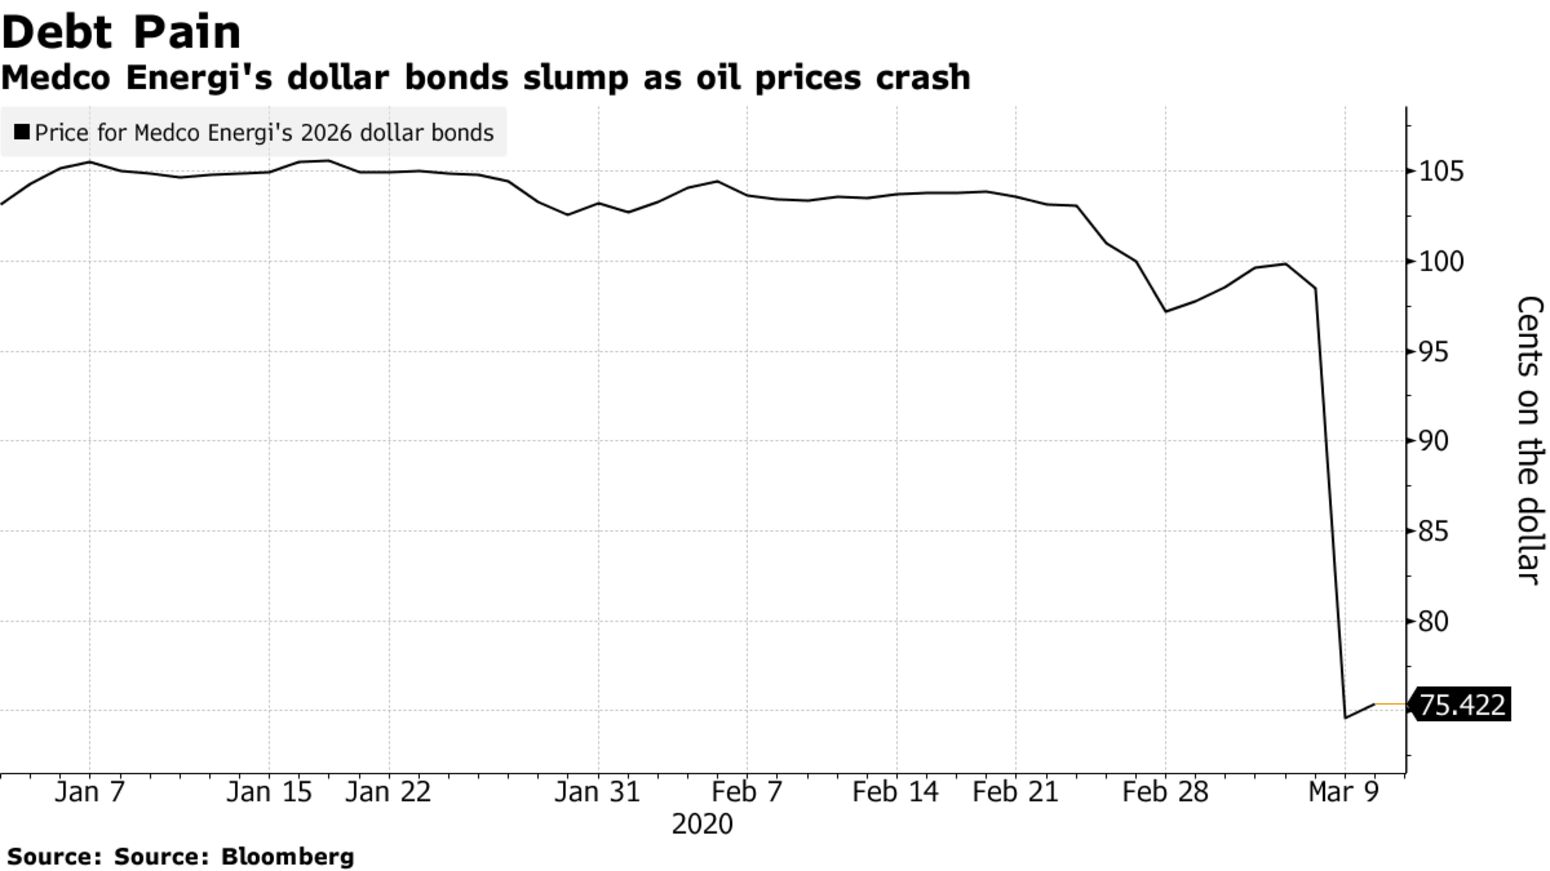 Medco Energi's dollar bonds slump as oil prices crash